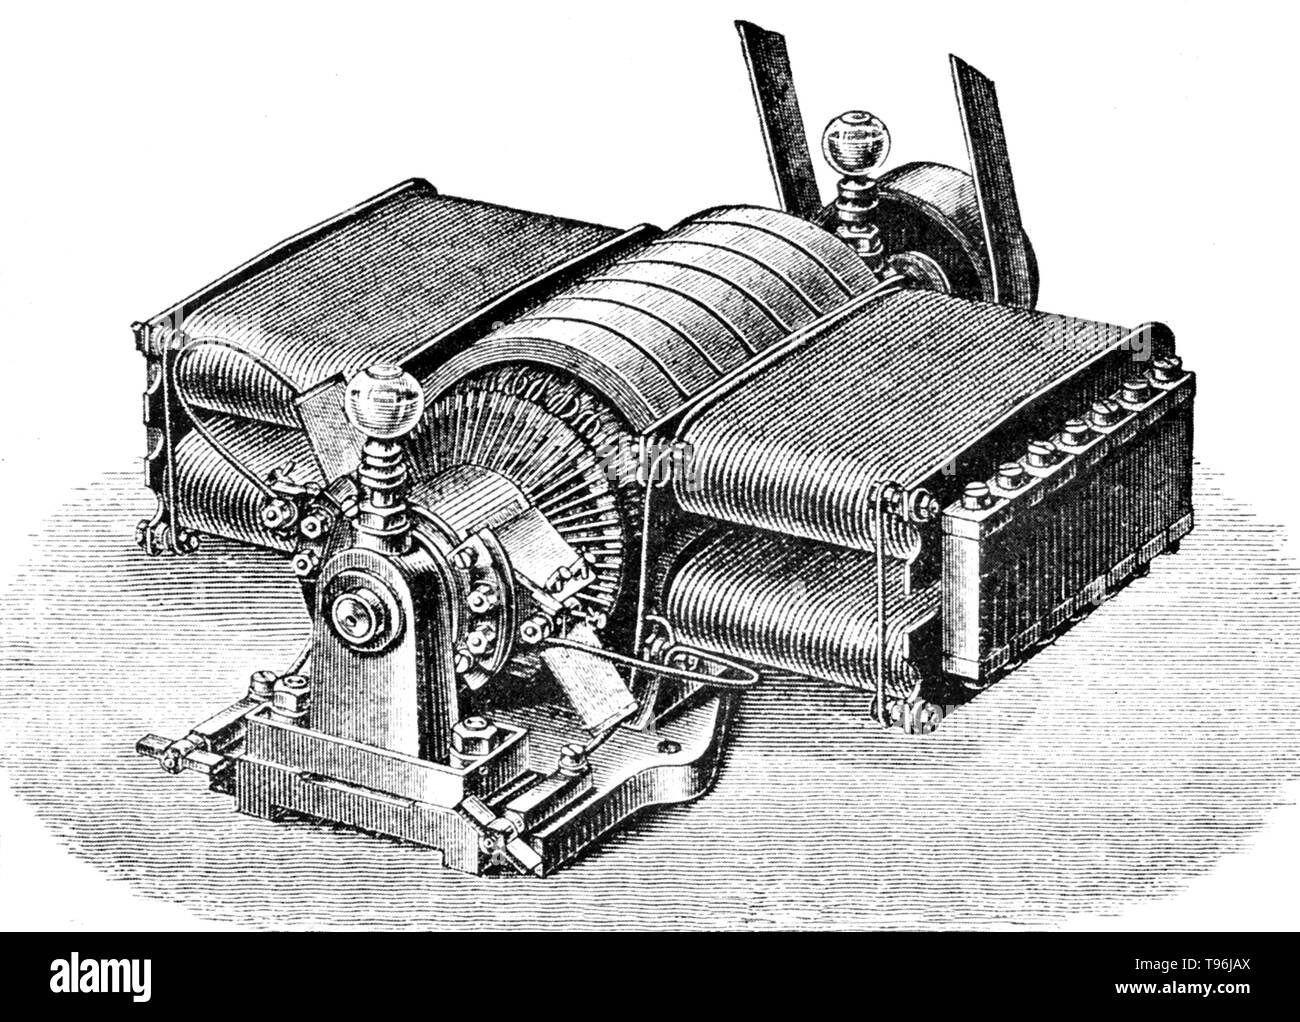 Un type de l'auto de Siemens (1873) dynamo passionnant avec drum-blessure induit et le bar le collecteur. Une dynamo est un générateur électrique qui crée le courant direct à l'aide d'un collecteur. Dynamos furent les premiers générateurs électriques capables de fournir la puissance pour l'industrie, et la fondation sur laquelle beaucoup d'autres plus tard les appareils de conversion d'énergie électrique ont été fondées, y compris le moteur électrique, le courant alternatif, l'alternateur et le convertisseur rotatif. Banque D'Images